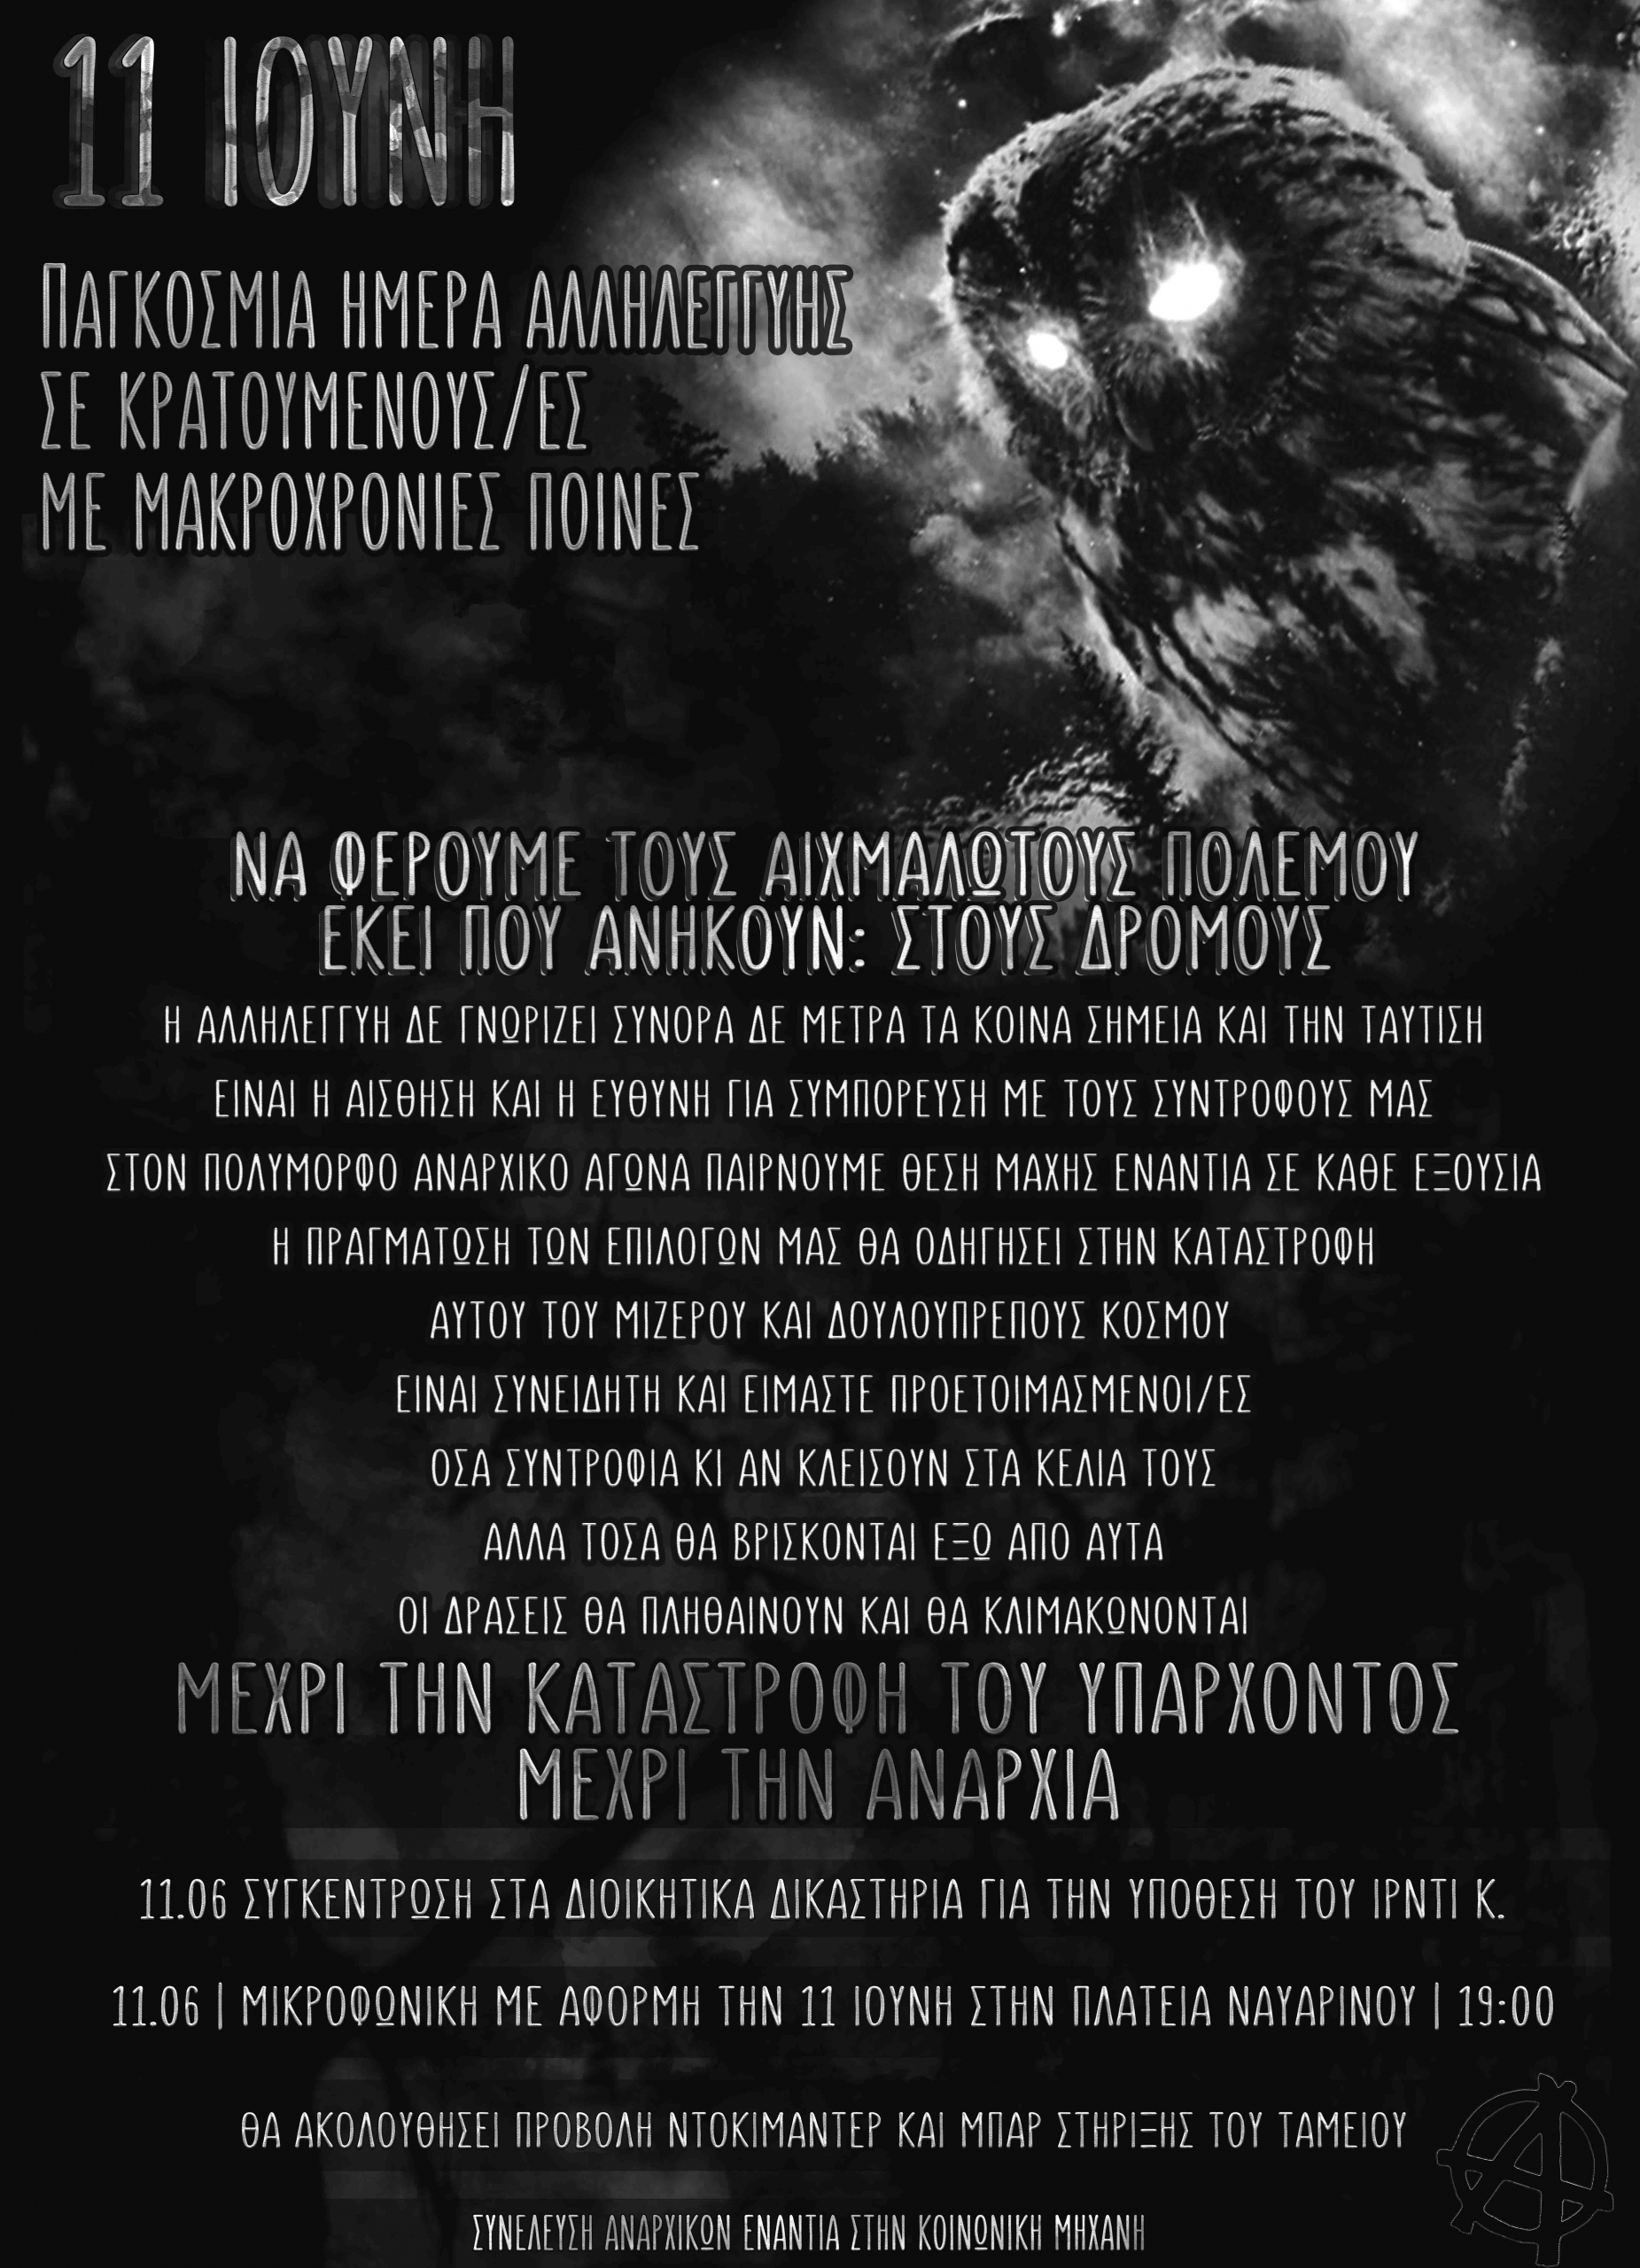 Θεσσαλονίκη: Αφίσα με αφορμή την 11η Ιούνη